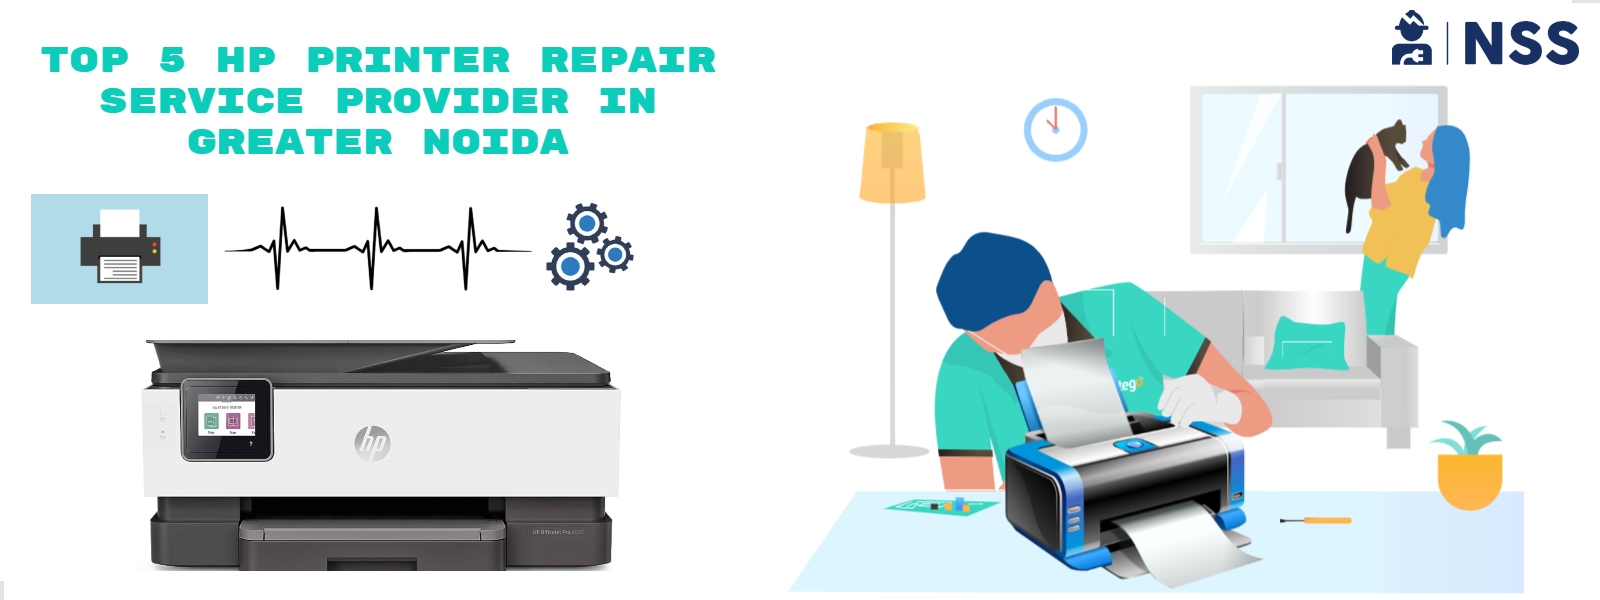 Top 5 HP Repair Printer Service Provider In Greater Noida